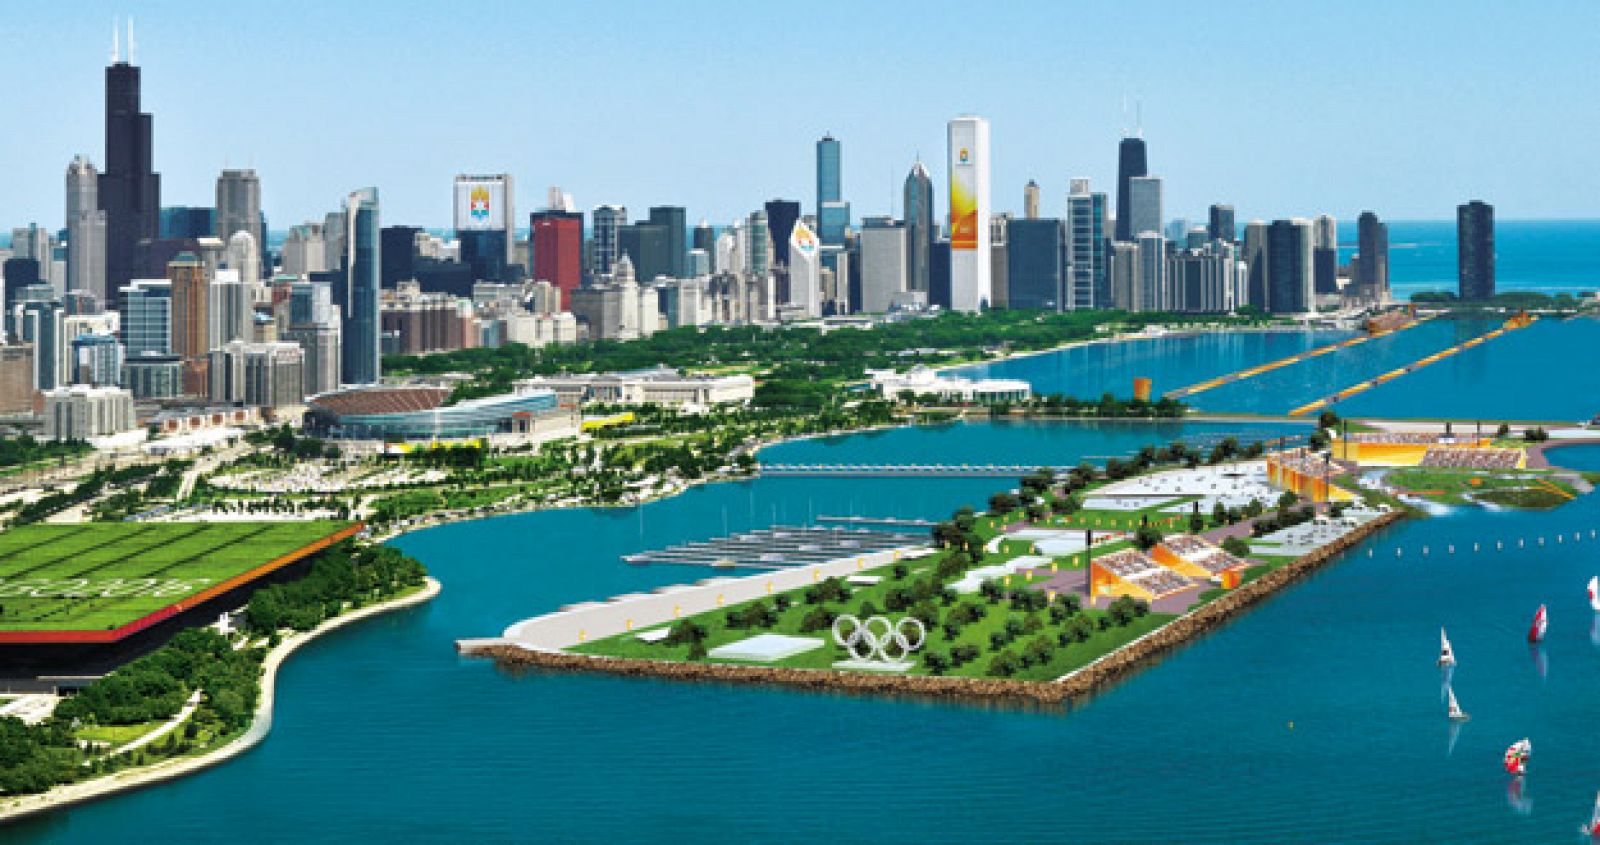 Recreación virtual de la Isla Olímpica, con el famoso "skyline" de Chicago al fondo